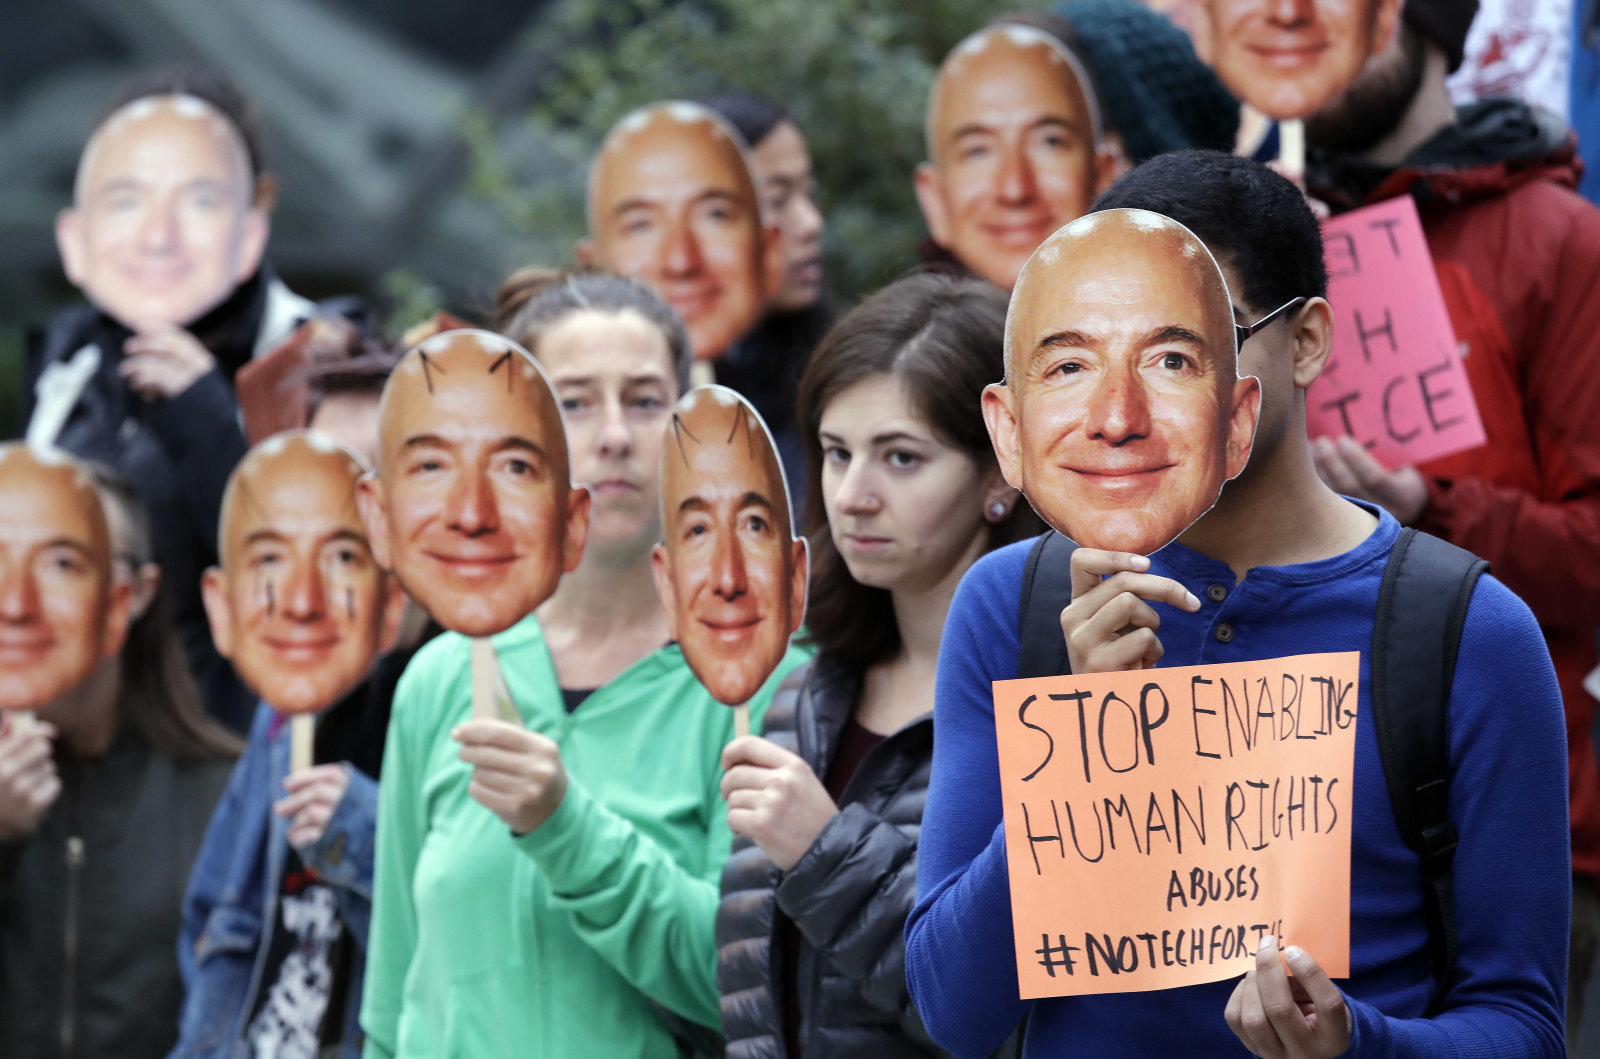 Amazon hissedarları yüz tanıma teknolojisini oylayacak